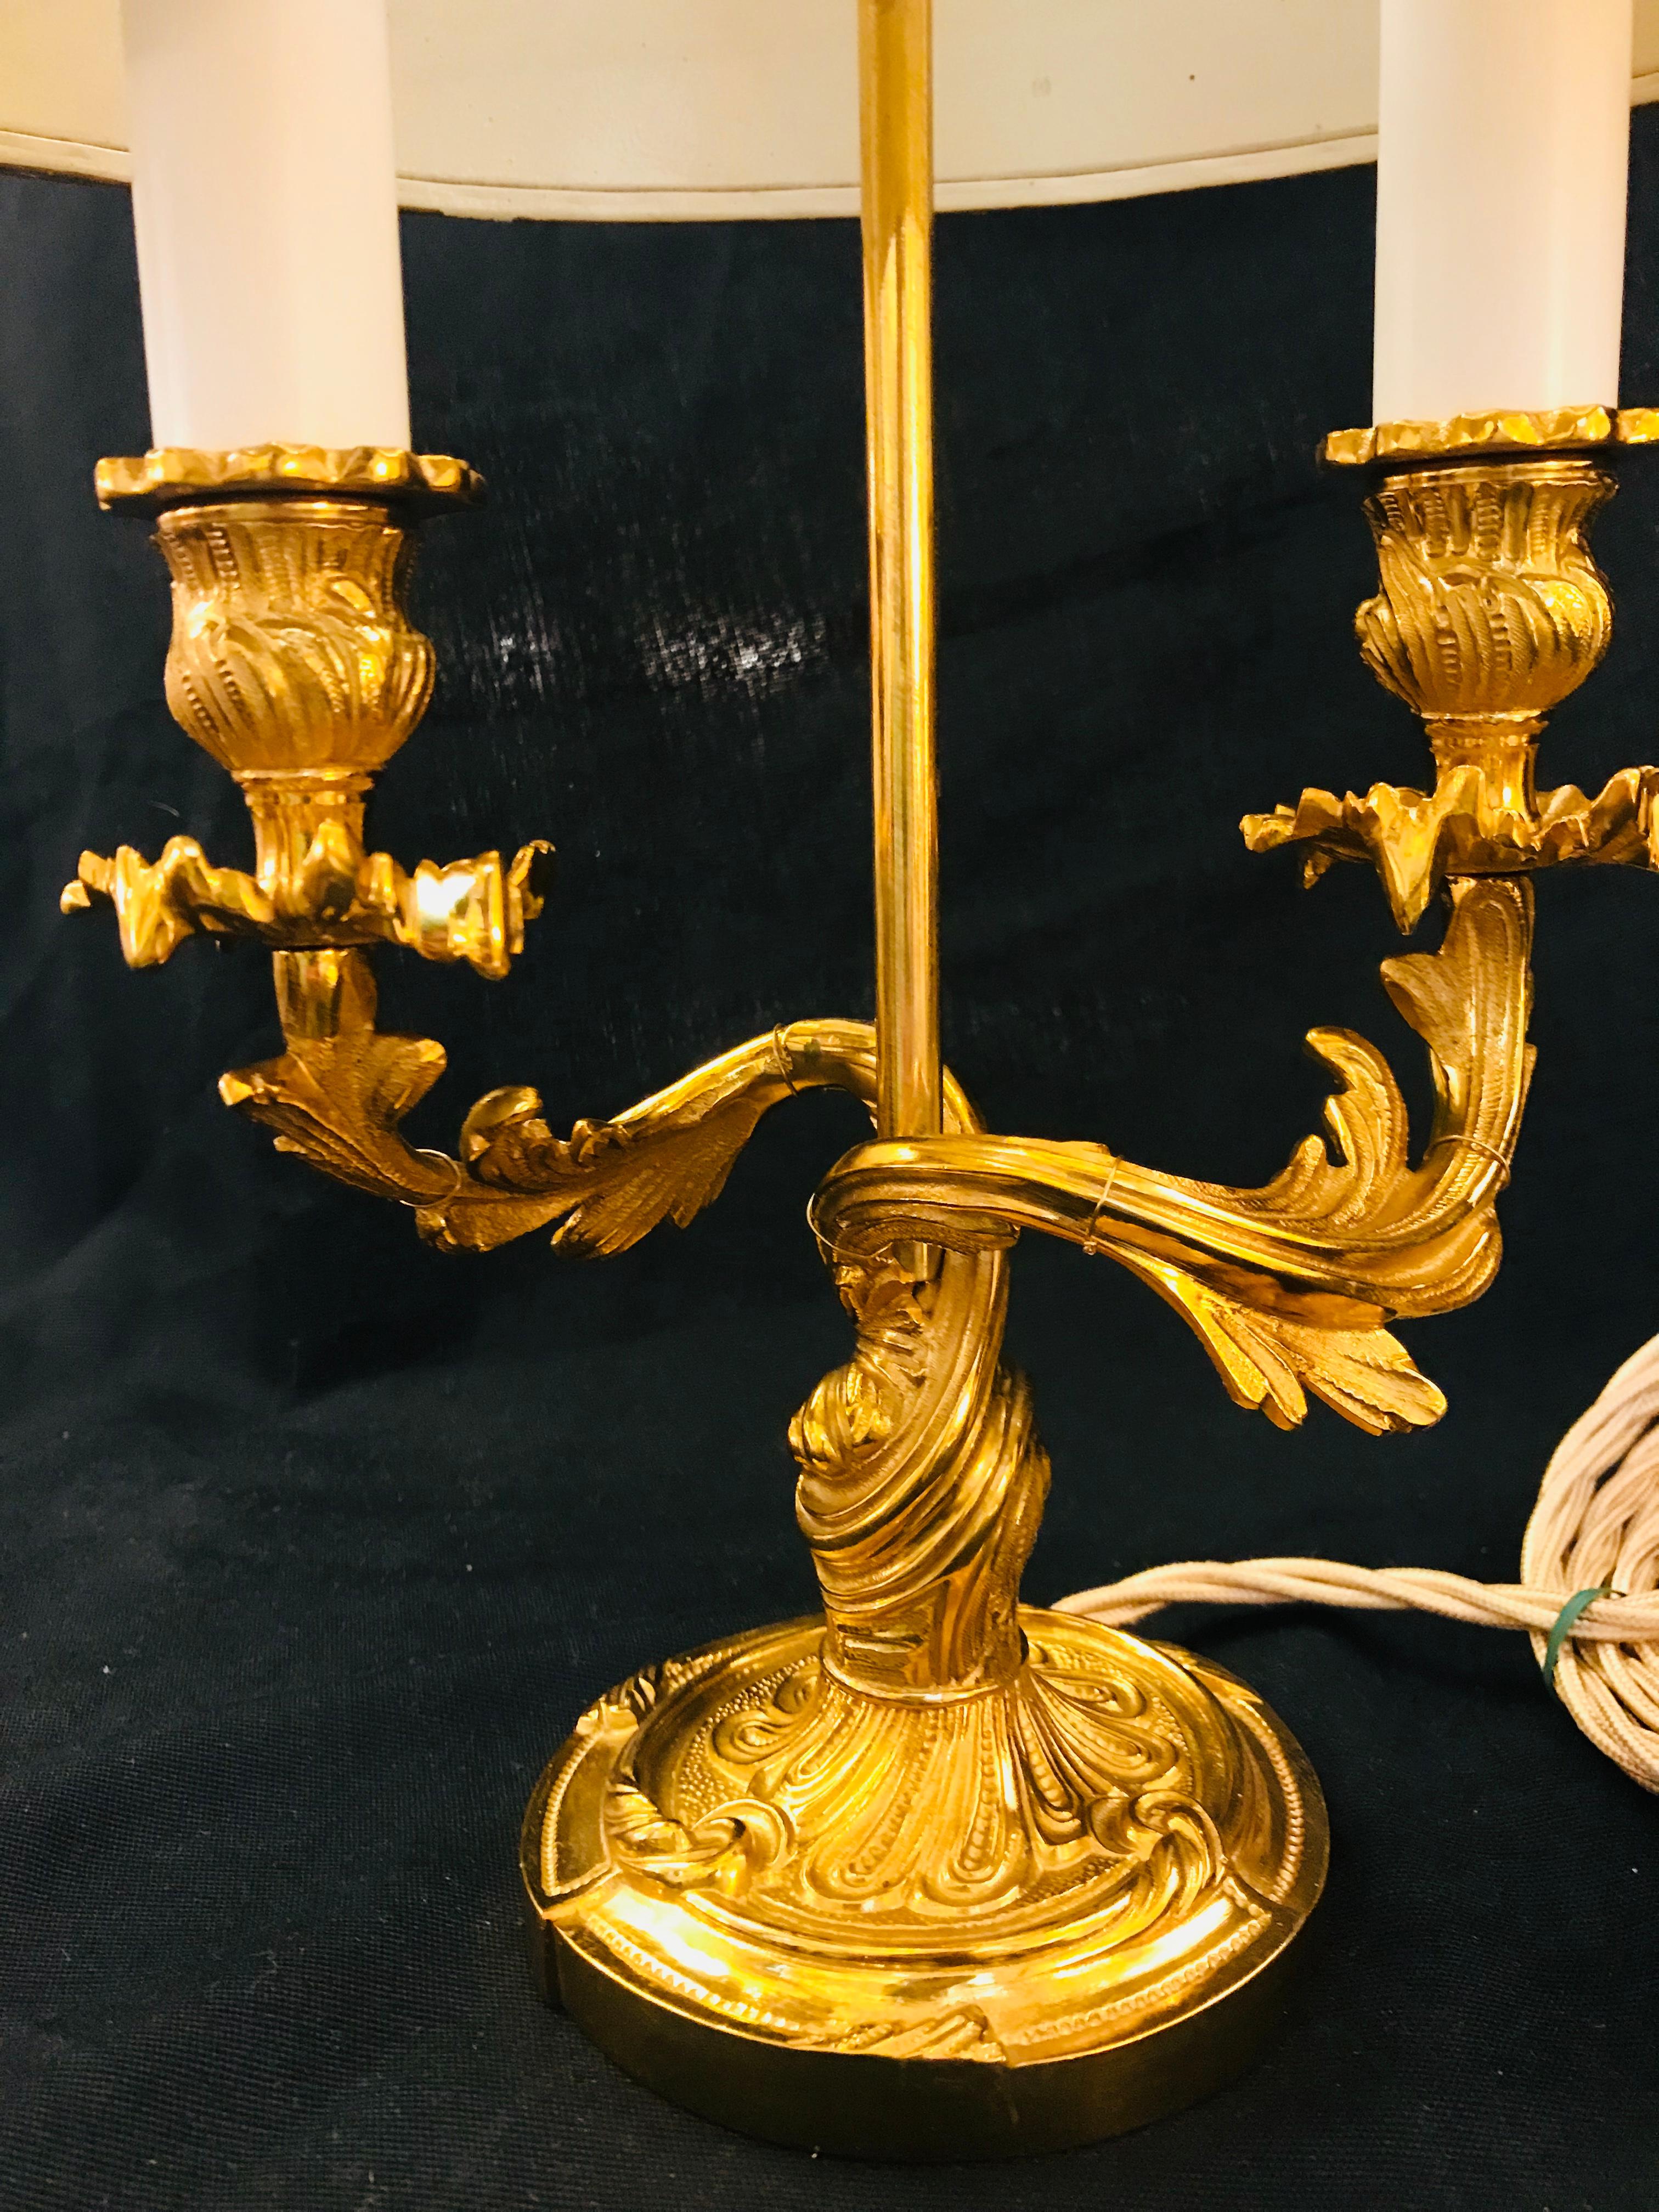 Diese vergoldete Bronzelampe im Stil Ludwigs XV. nimmt den Geschmack der Rokokozeit wieder auf. Das Stück ist mit pflanzlichen Motiven verziert und zeichnet sich durch Eleganz und Opulenz in den Formen aus. Der Stiel ist gewellt und gekräuselt und